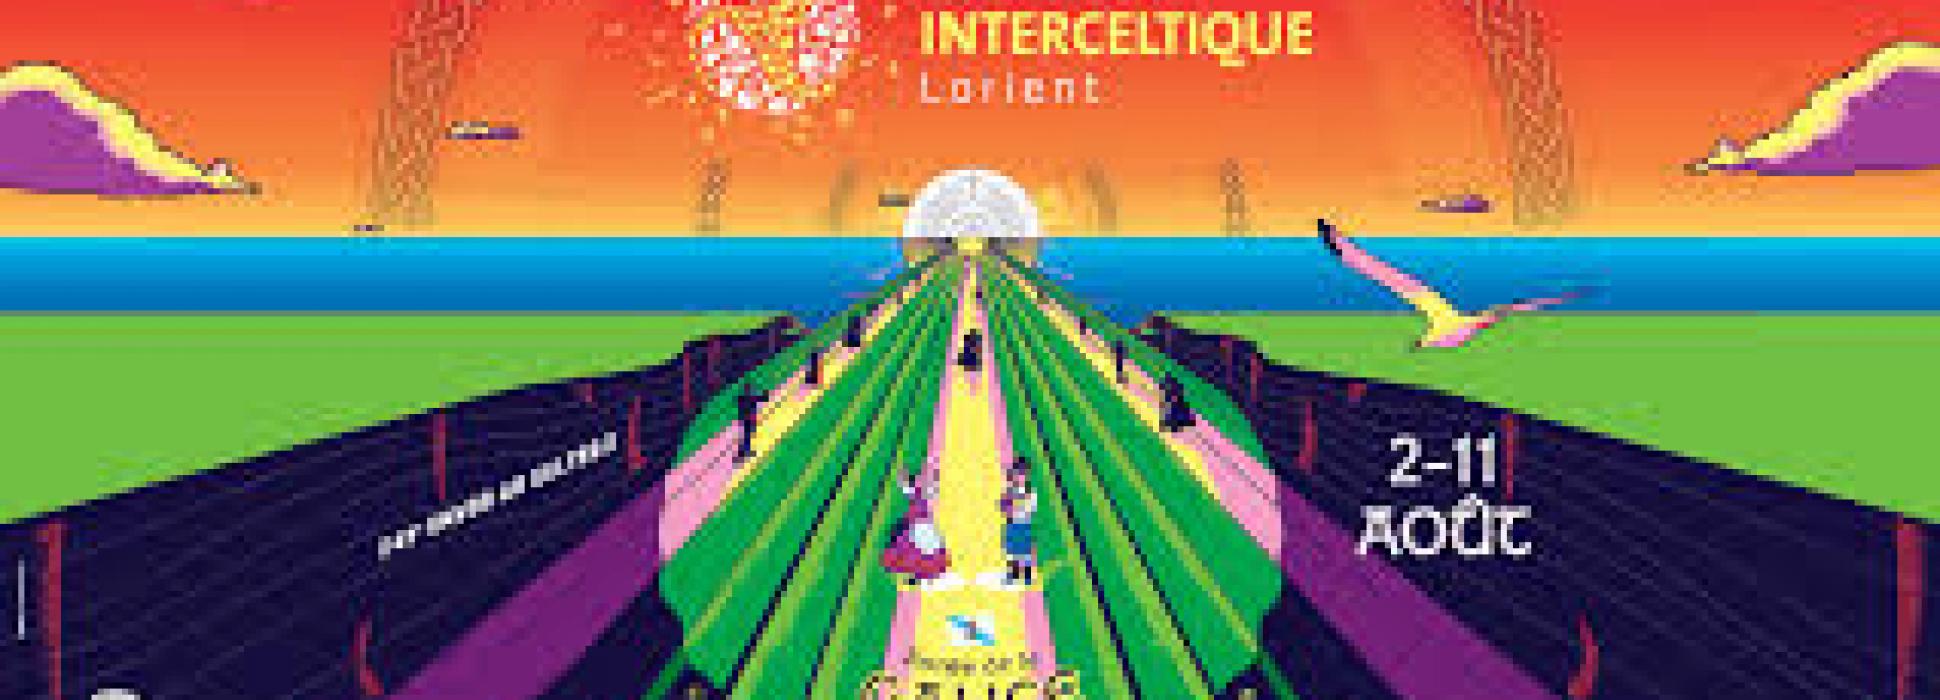 Du 2 au 11 août 2019, la 49ème édition du Festival Interceltique de Lorient célébrera la Galice